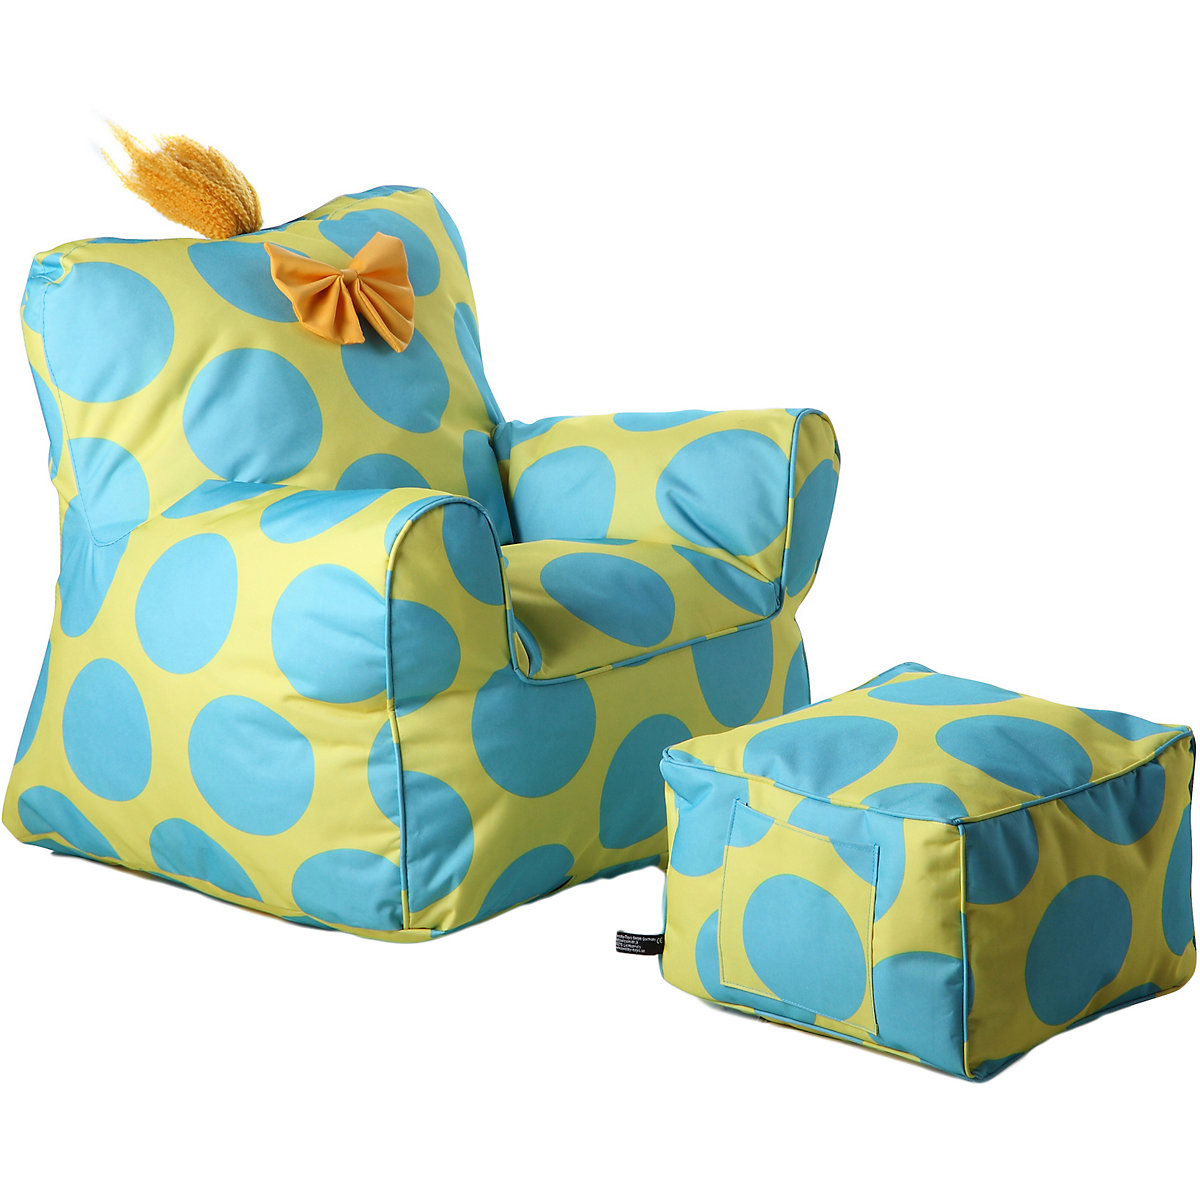 Sweety-Toys Sweety Toys Kindersessel-Set/ Sessel mit Fusshocker Gelb-türkis gefüllt mit Schaumstoff indoor/outdoor wasserfest